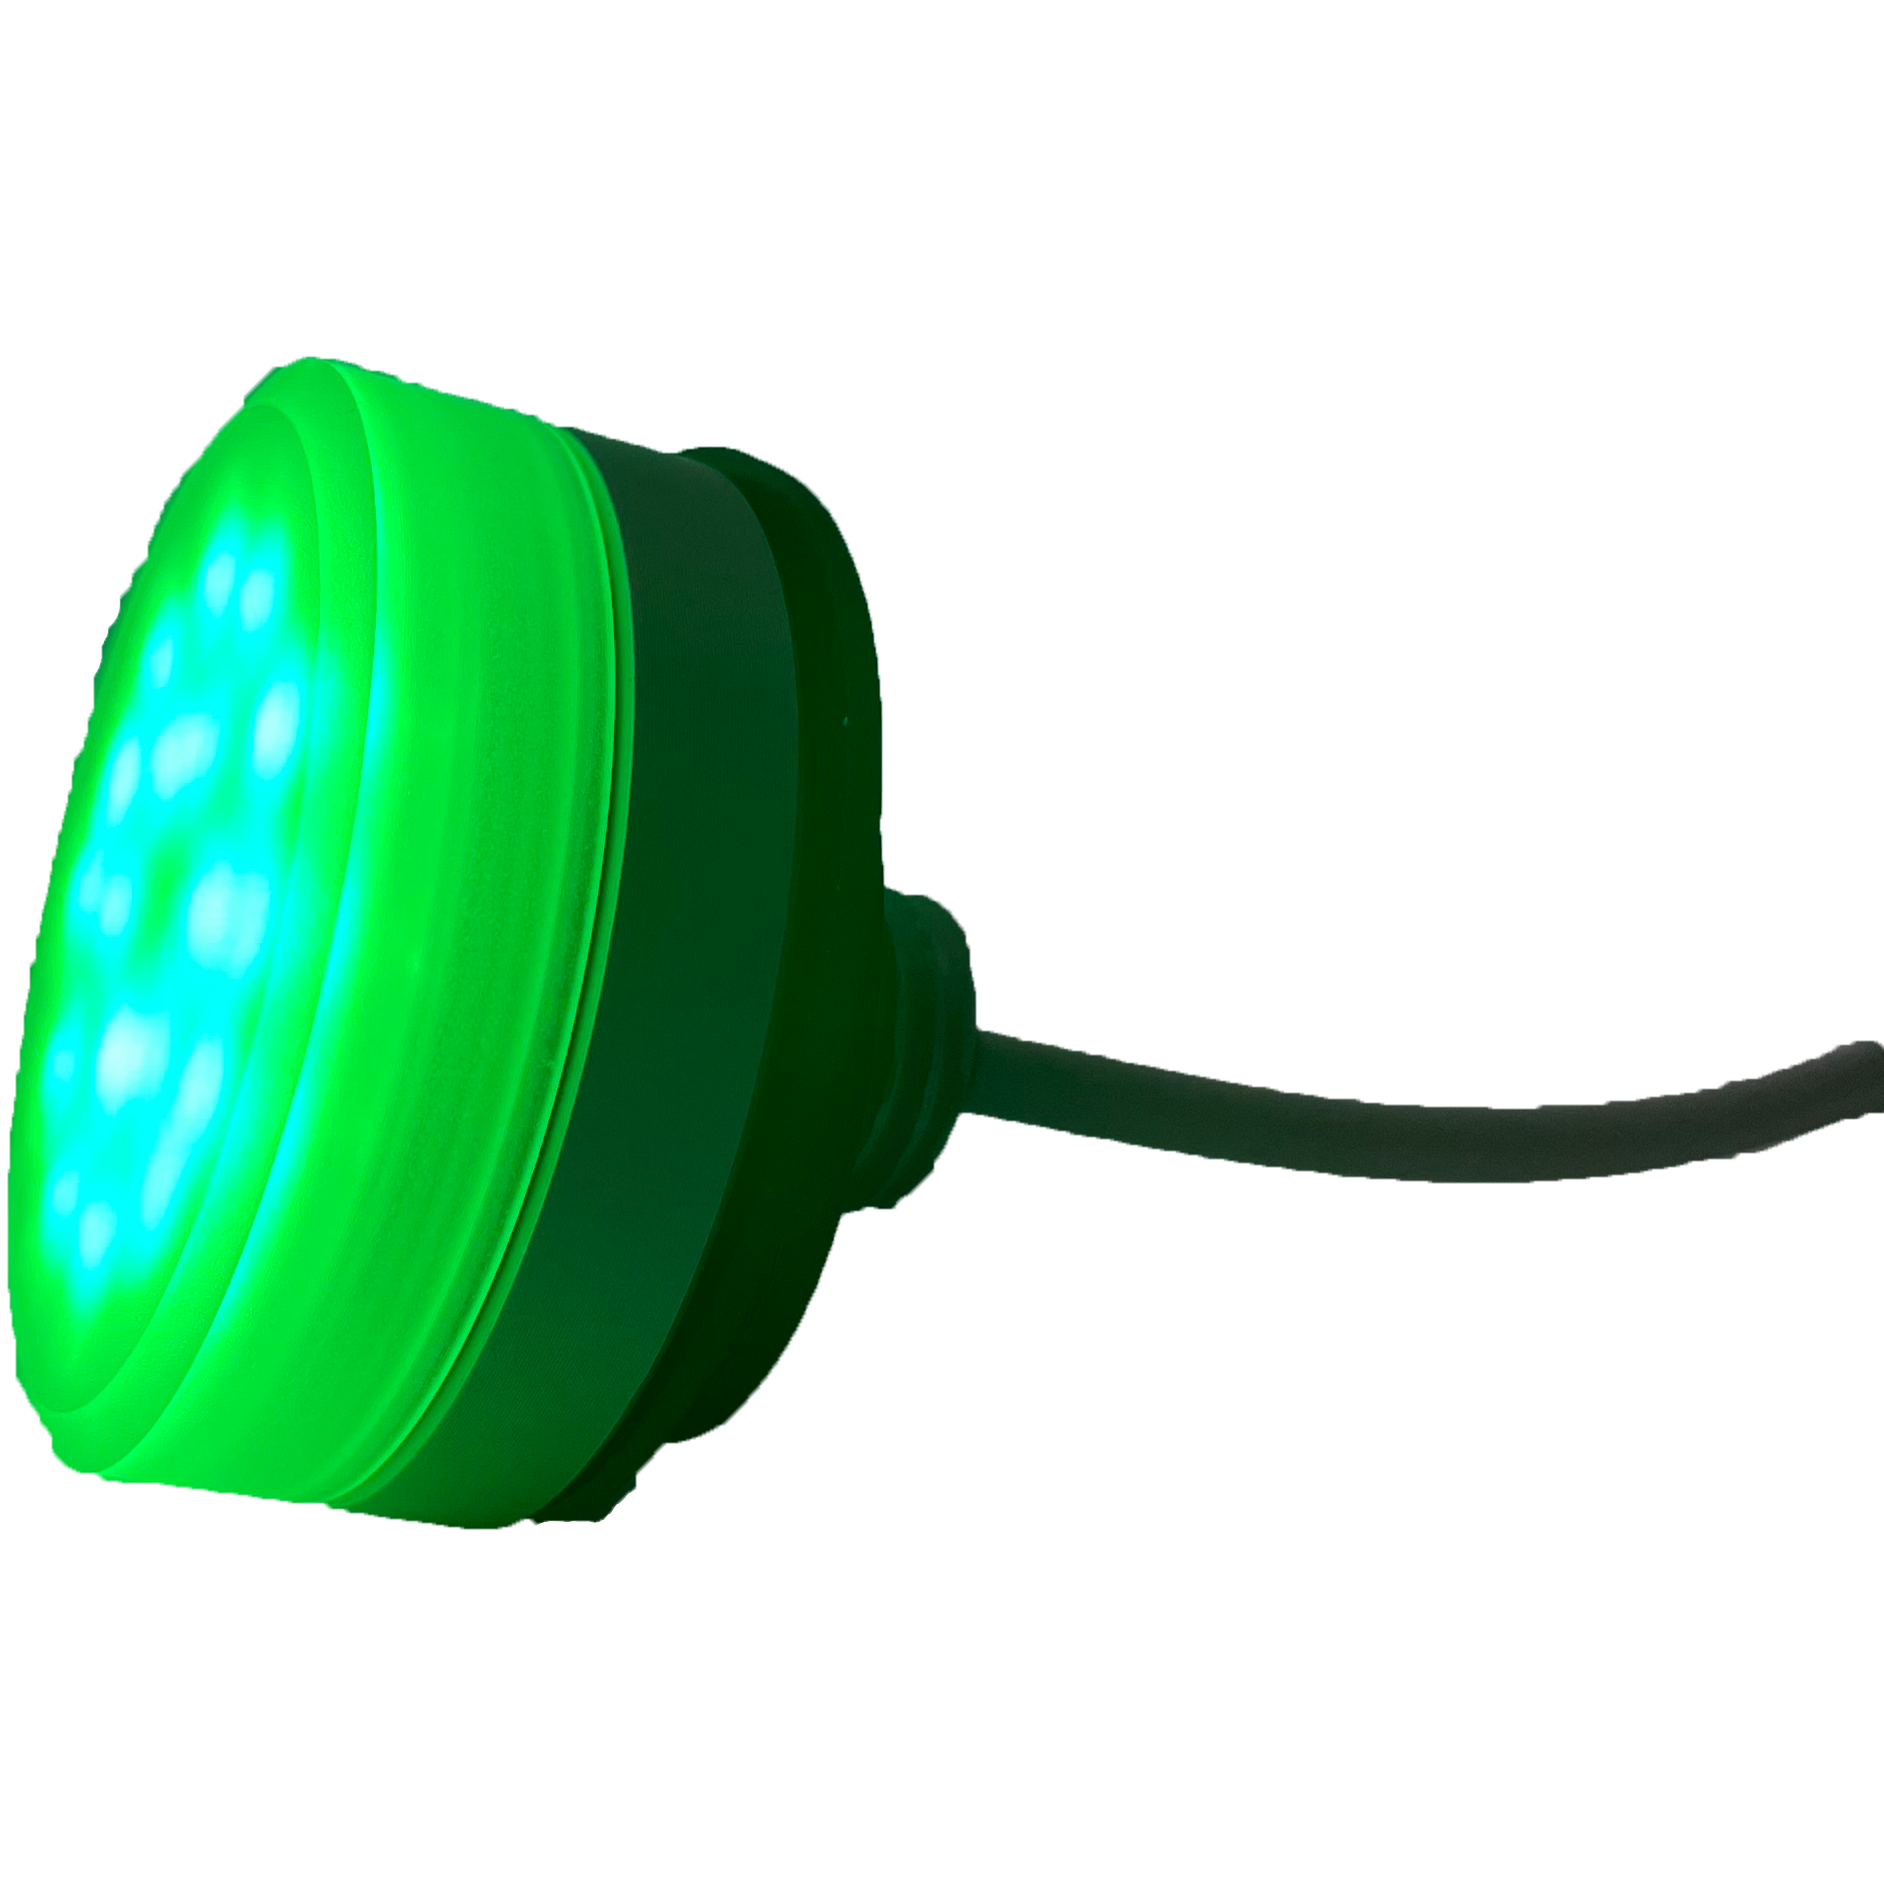 James Dyson kijk in gevolg 30L20GR - Groene LED Lamp in aluminium behuizing - In te bouwen in oud –  Heftronic